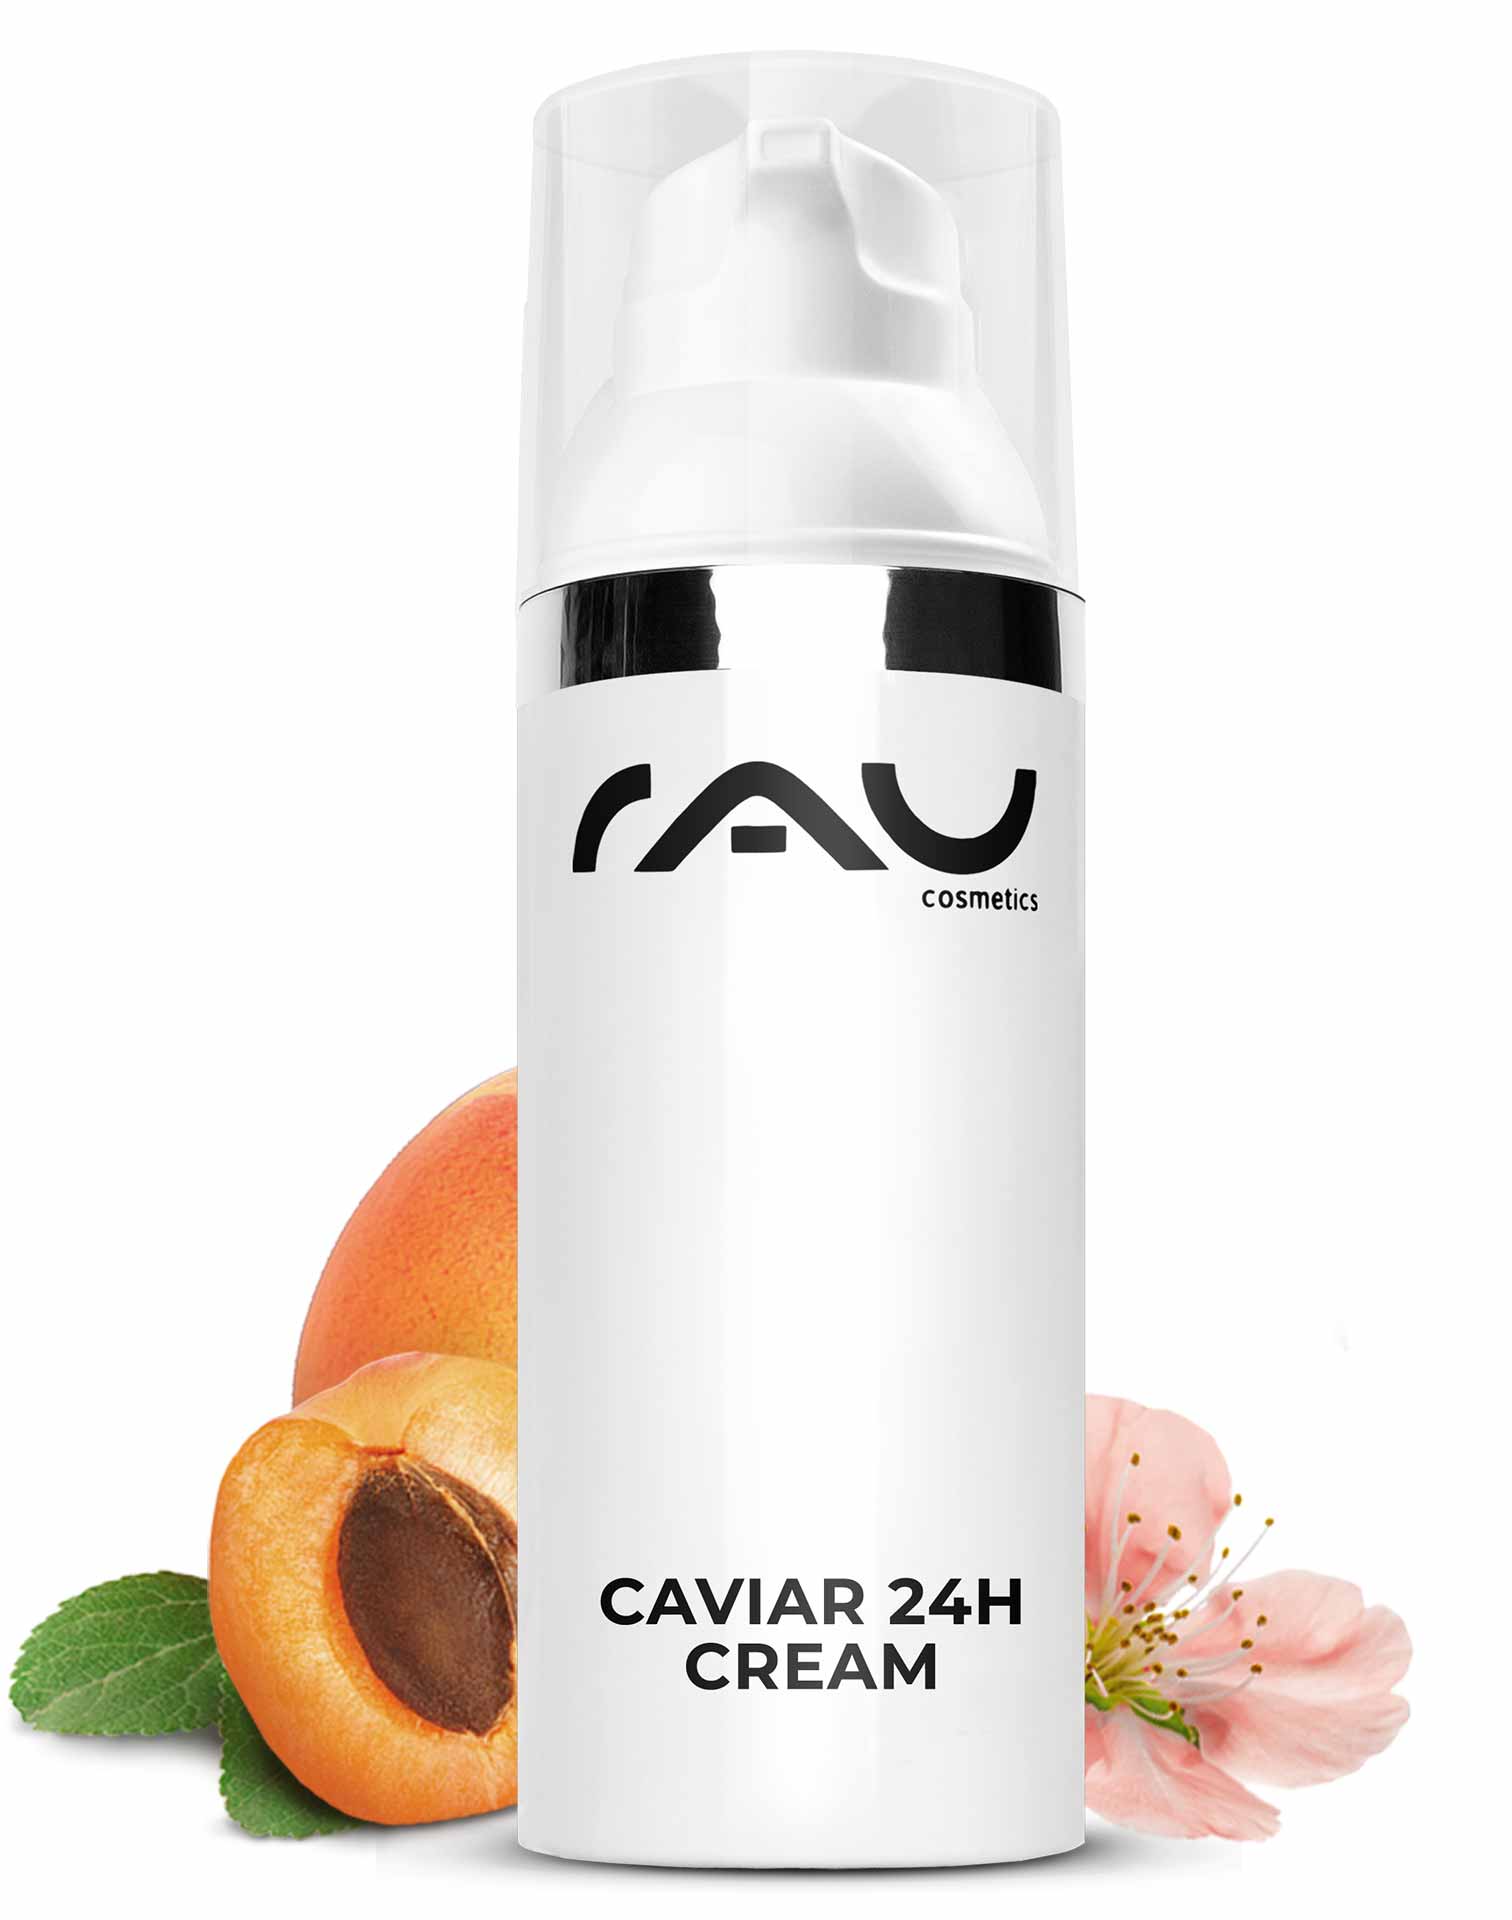 Caviar 24h Cream 50 ml Trattamento della pelle con estratto di caviale